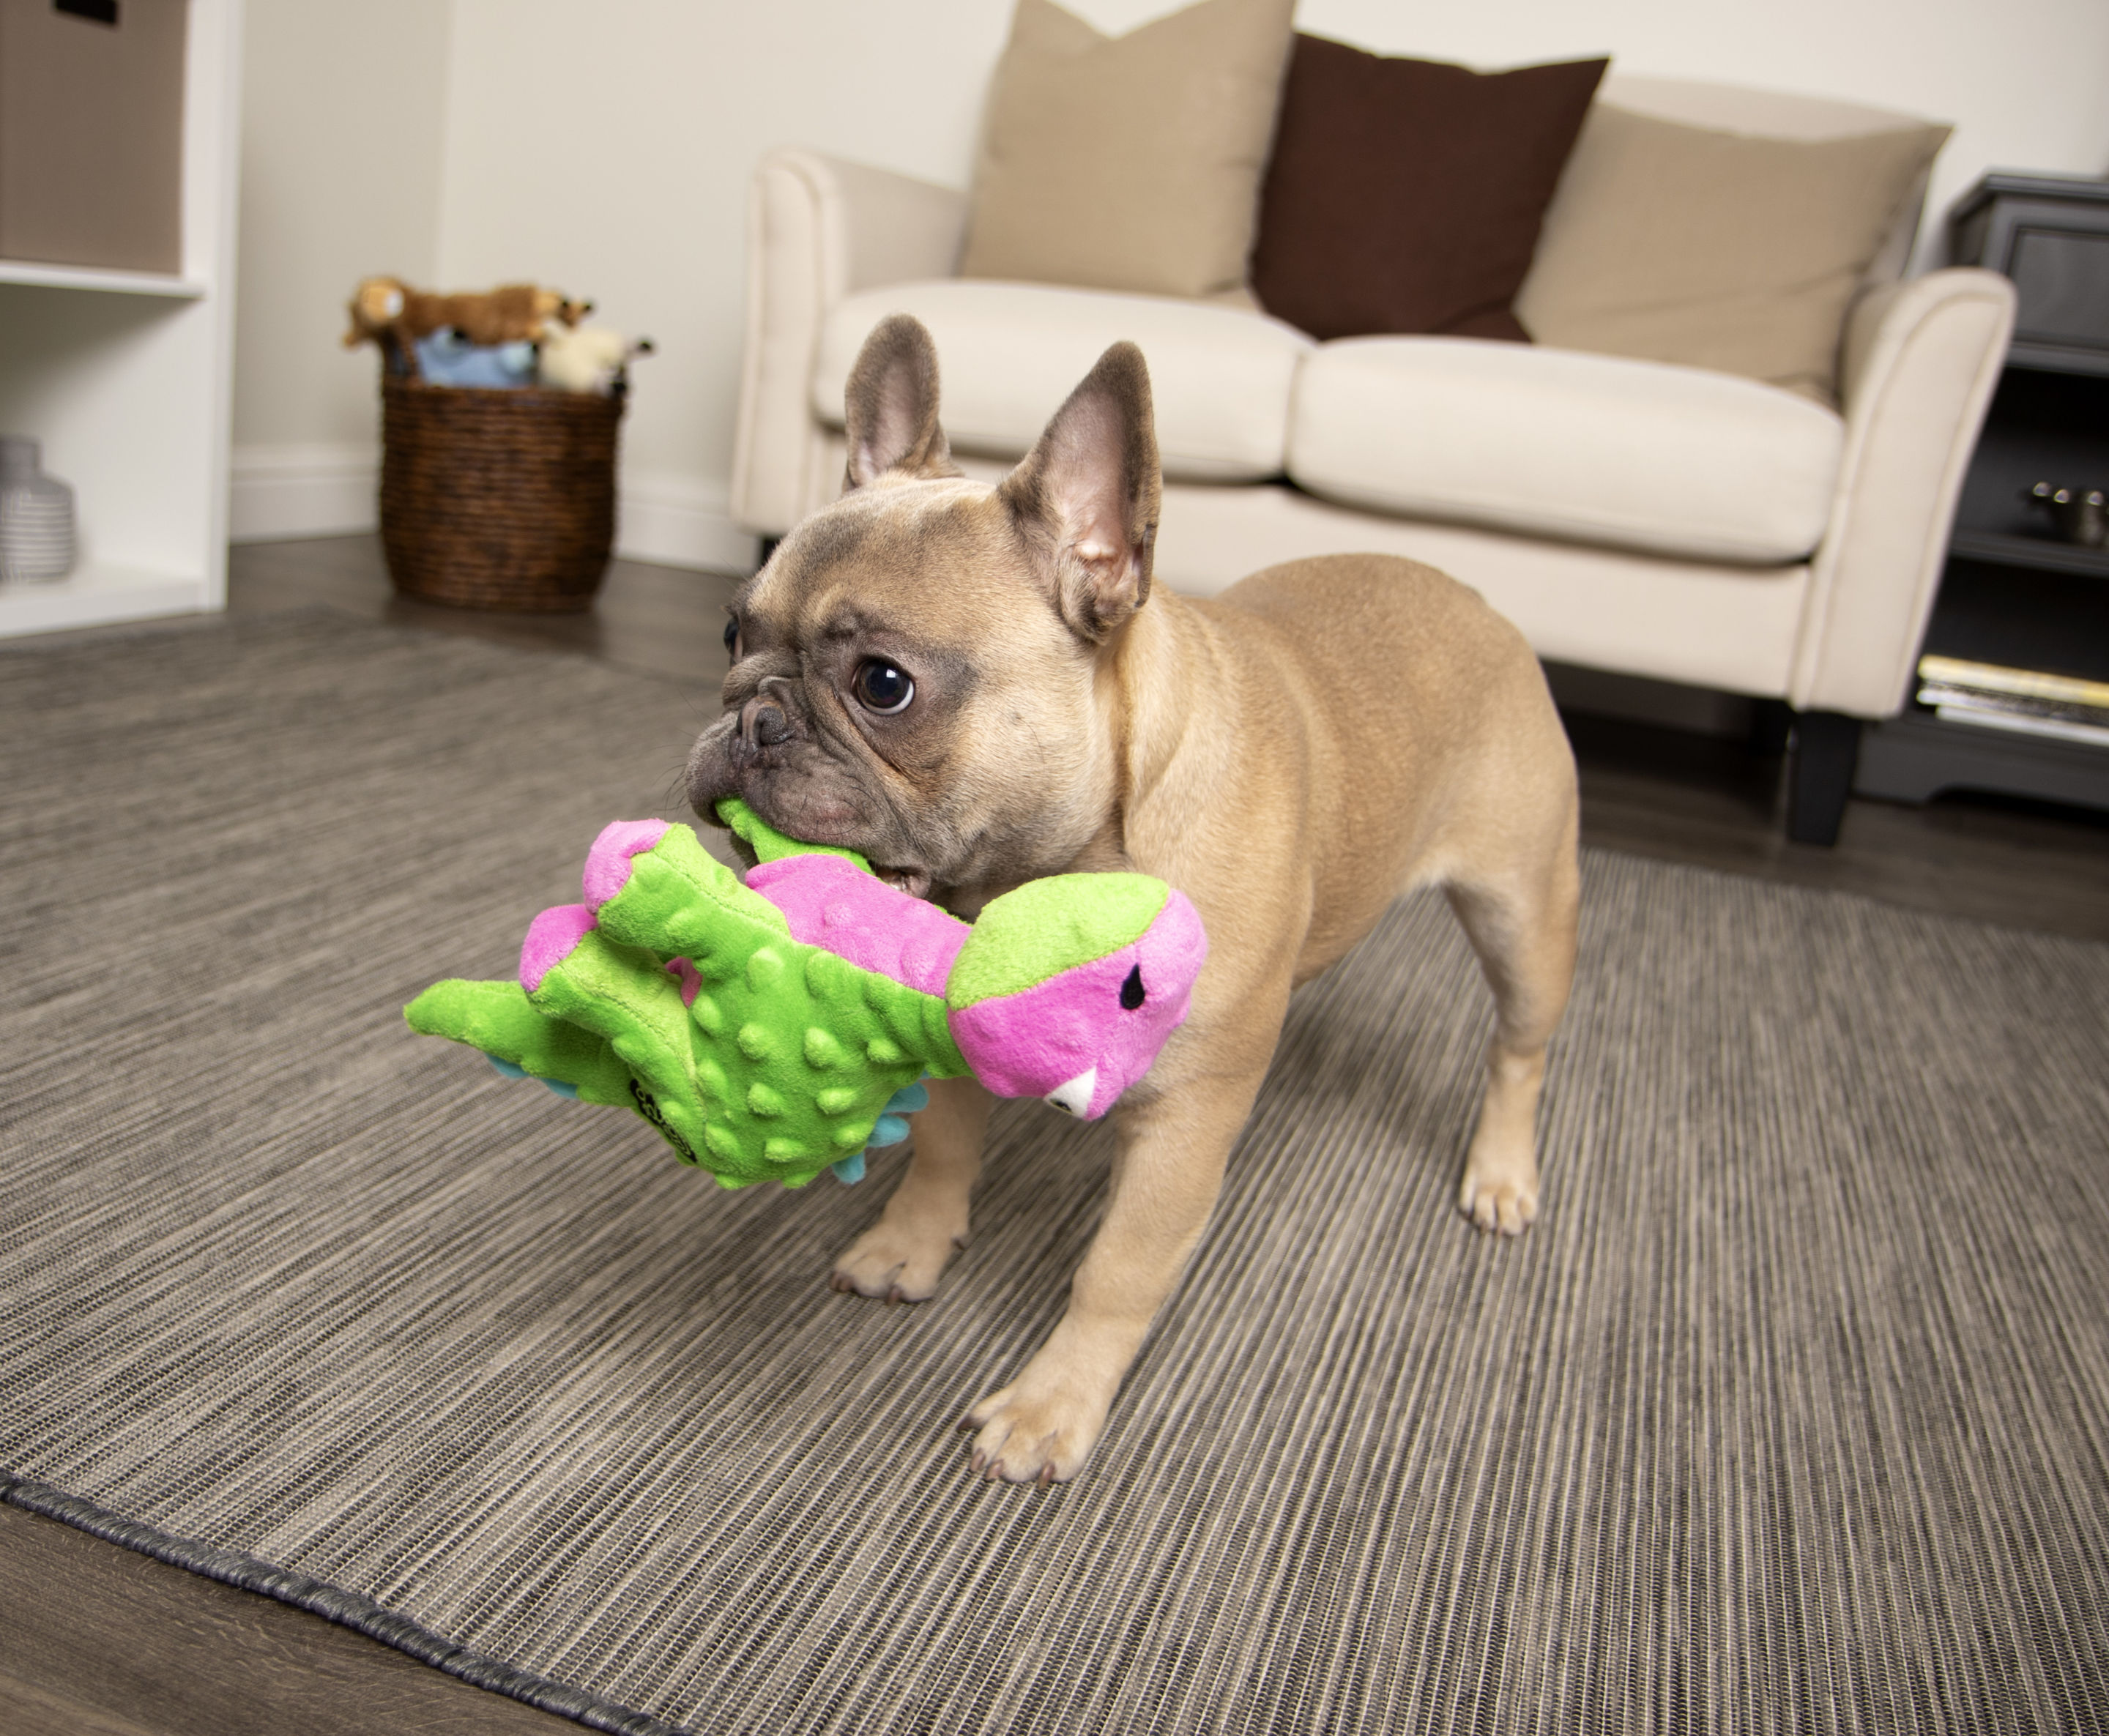 goDog Gators Squeaky Plush Dog Toy: $8, 'Almost Indestructible